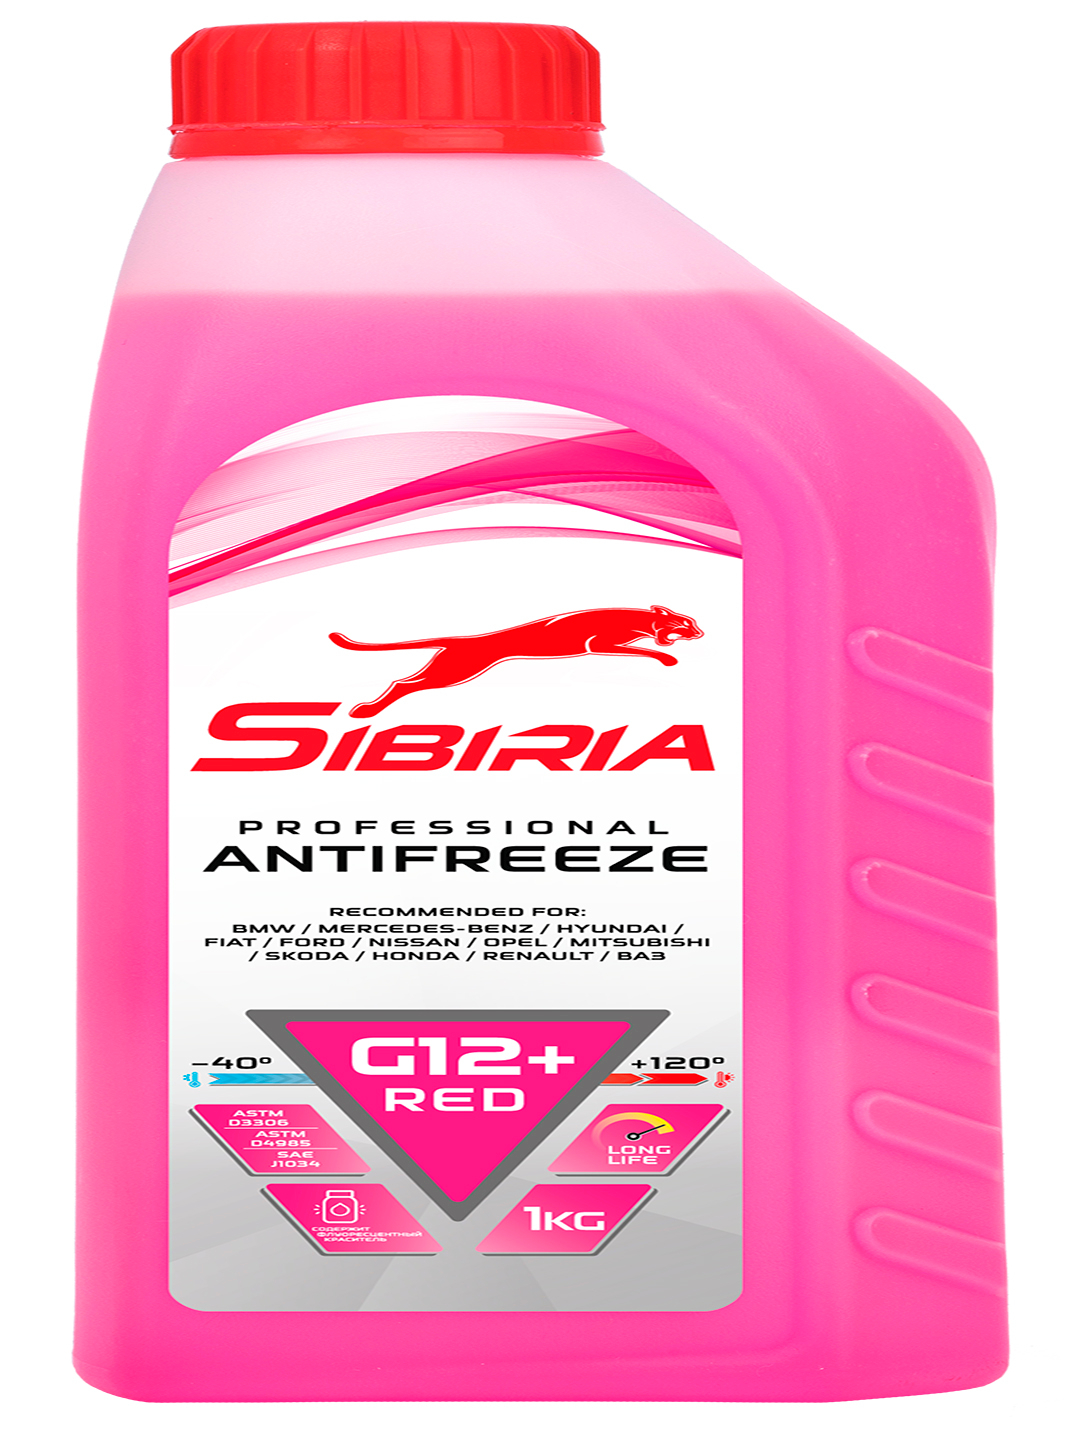  SIBIRIA ANTIFREEZE G12+ (-40) красный 1 кг за 239 ₽  в .